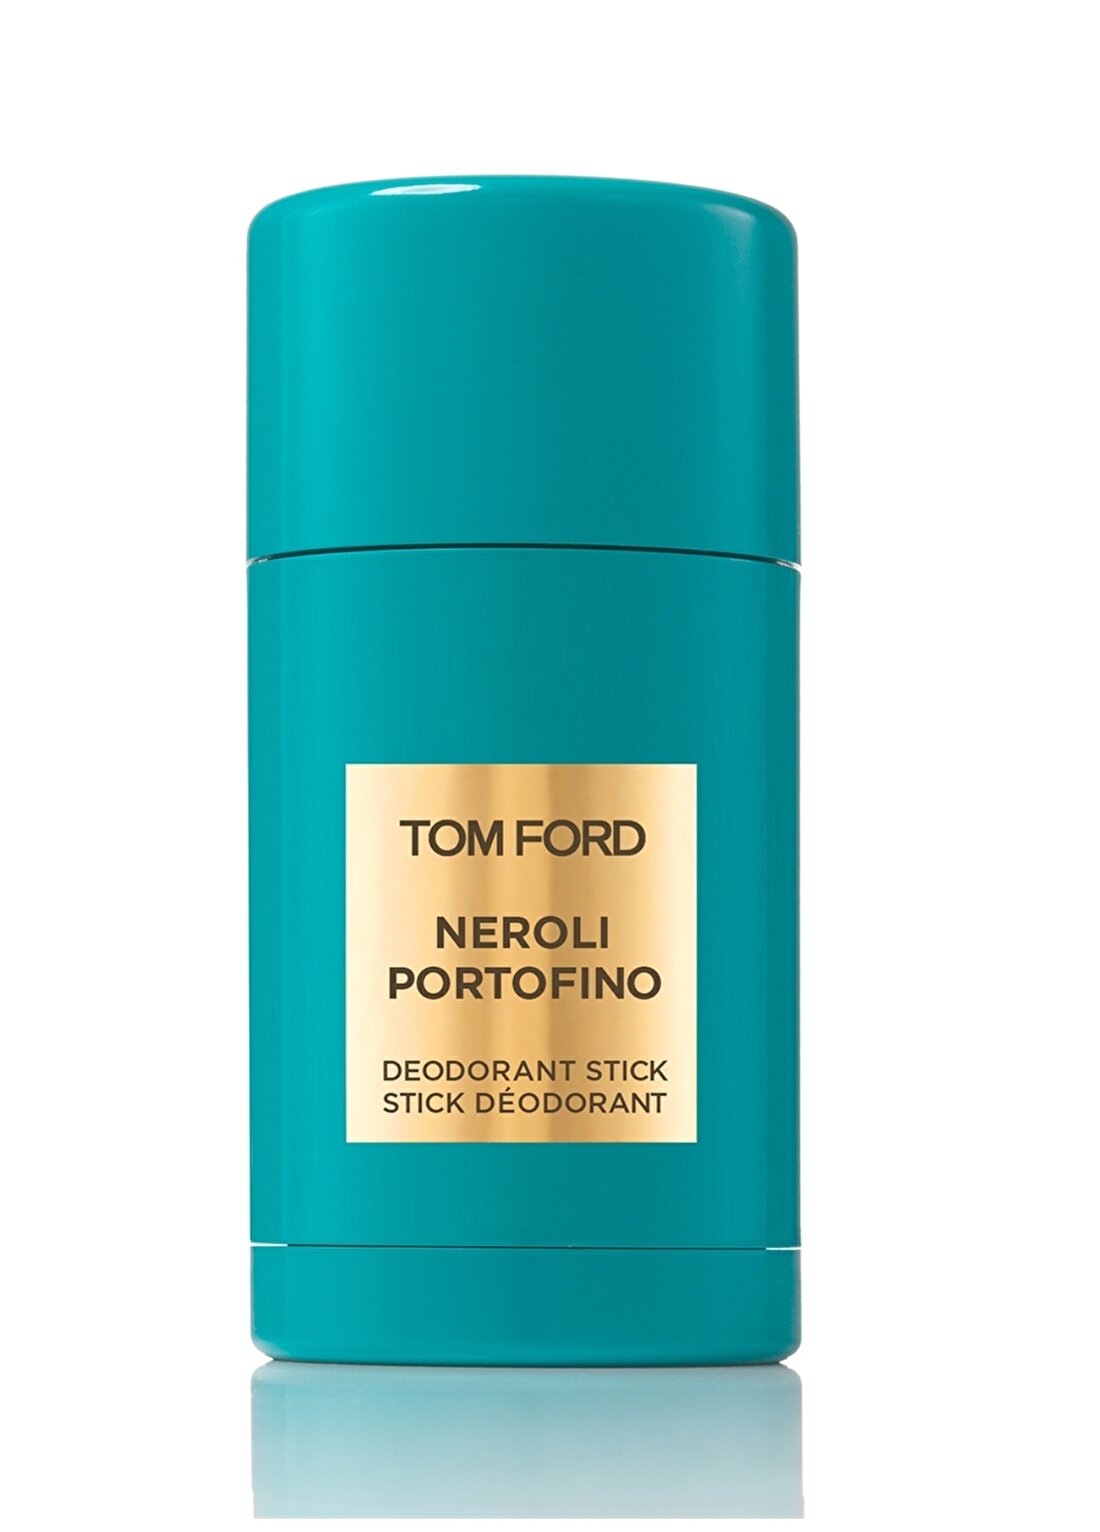 Tom Ford Neroli Portofino Stick Deodorant